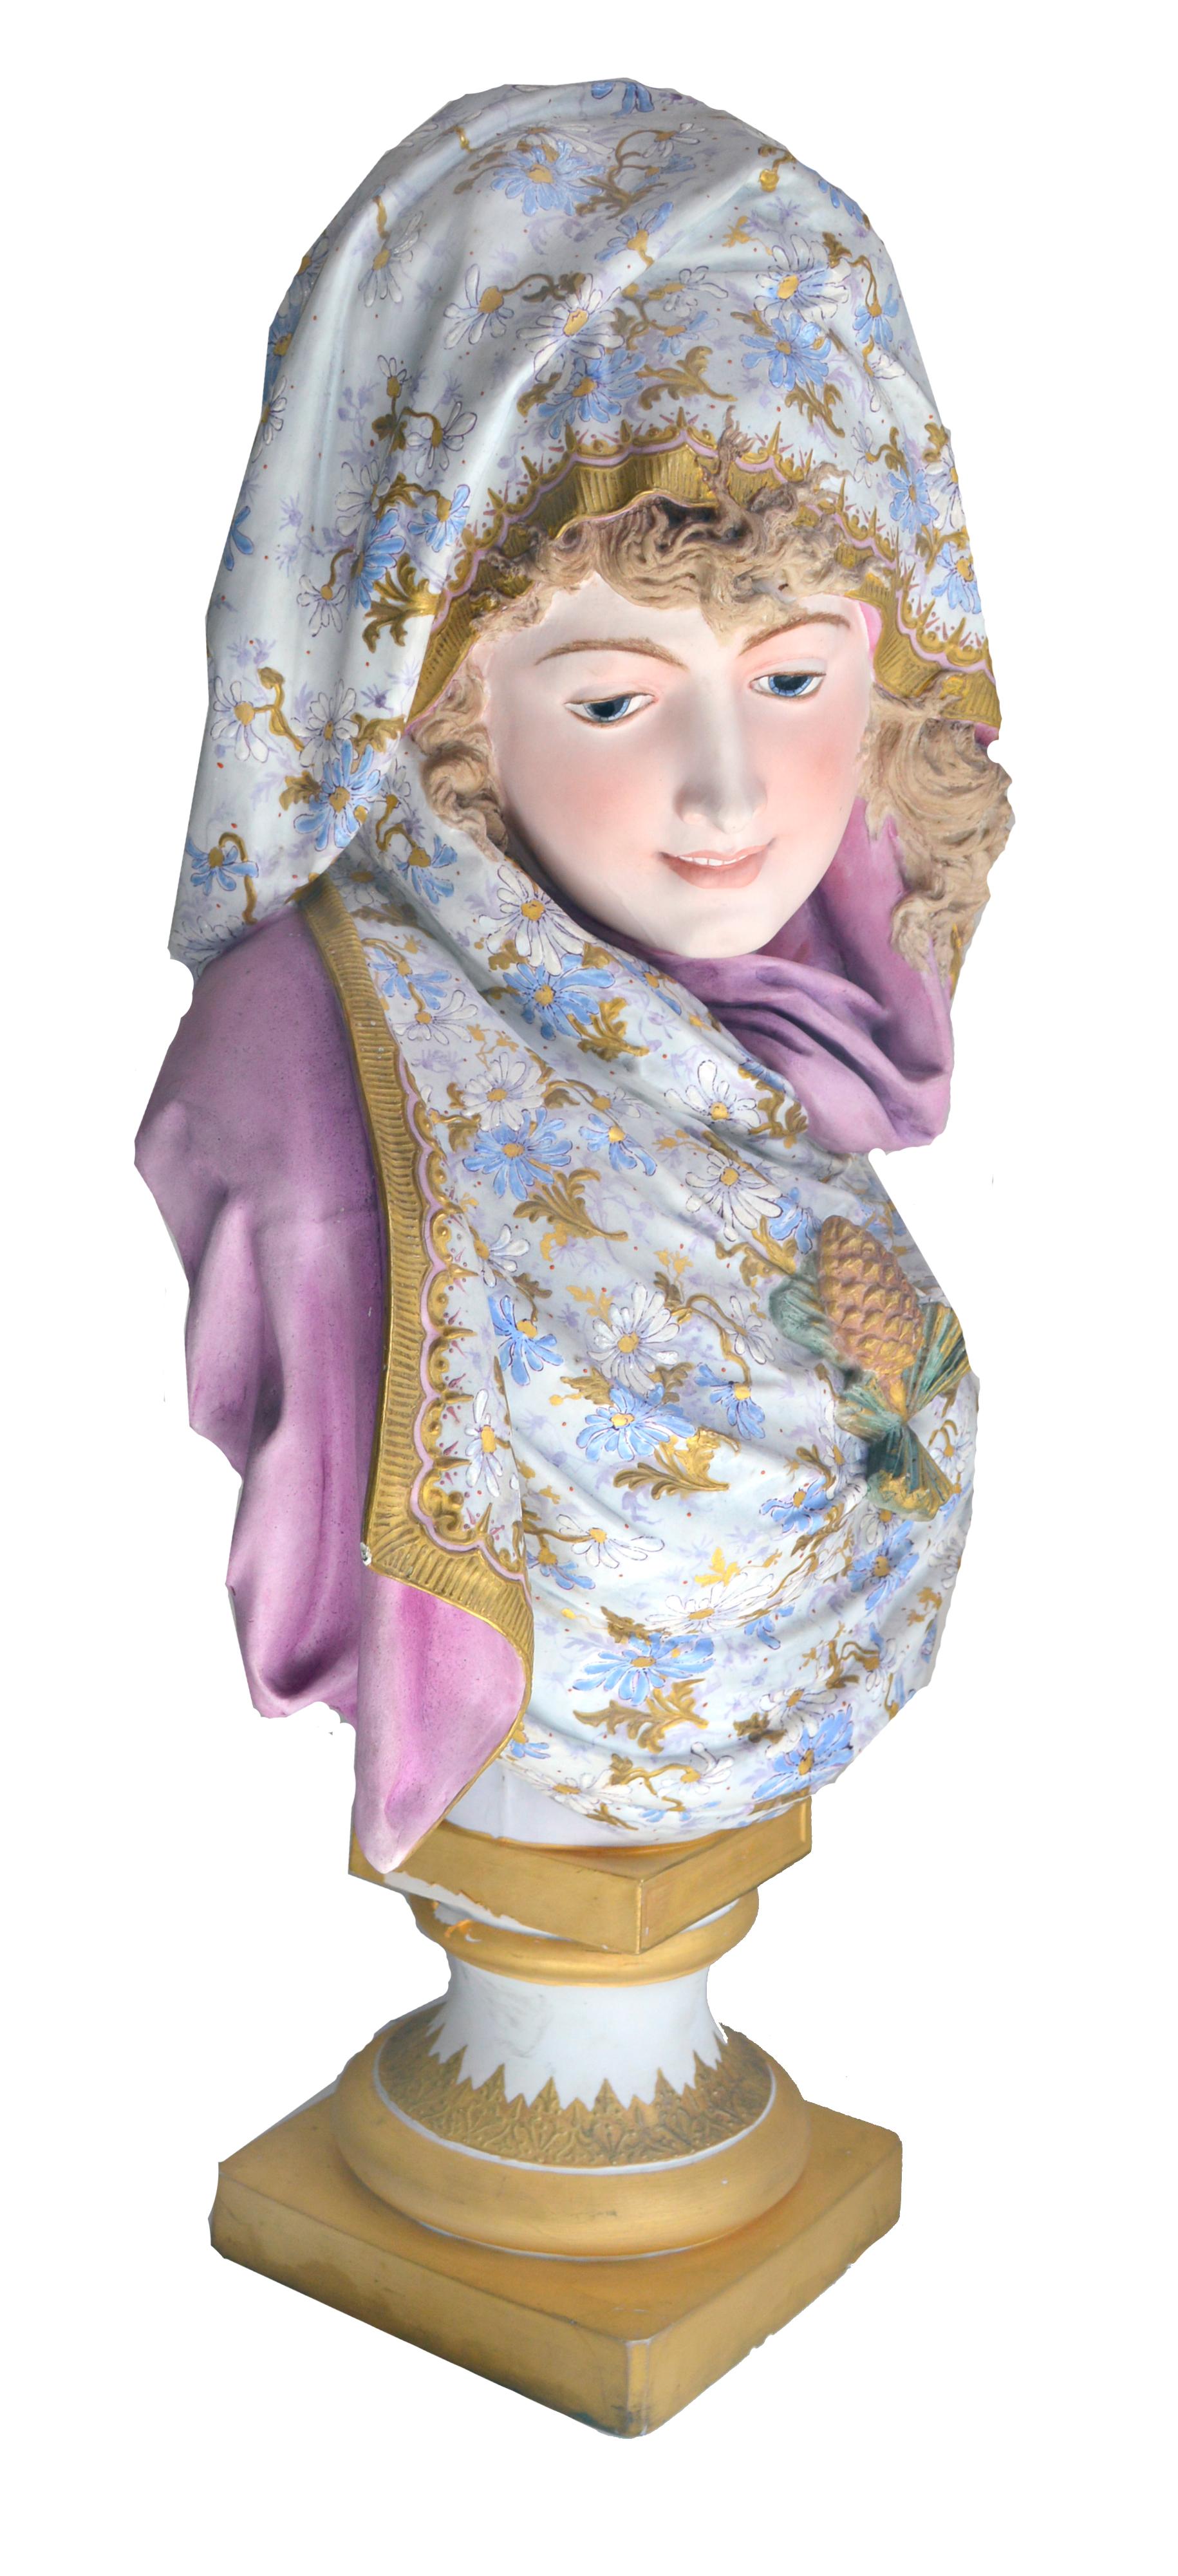 Albert-Ernest Carrier Belleuse Biskuitchrome persische Jungfrau von Albert-Ernest – Sculpture von Albert-Ernest Carrier-Belleuse